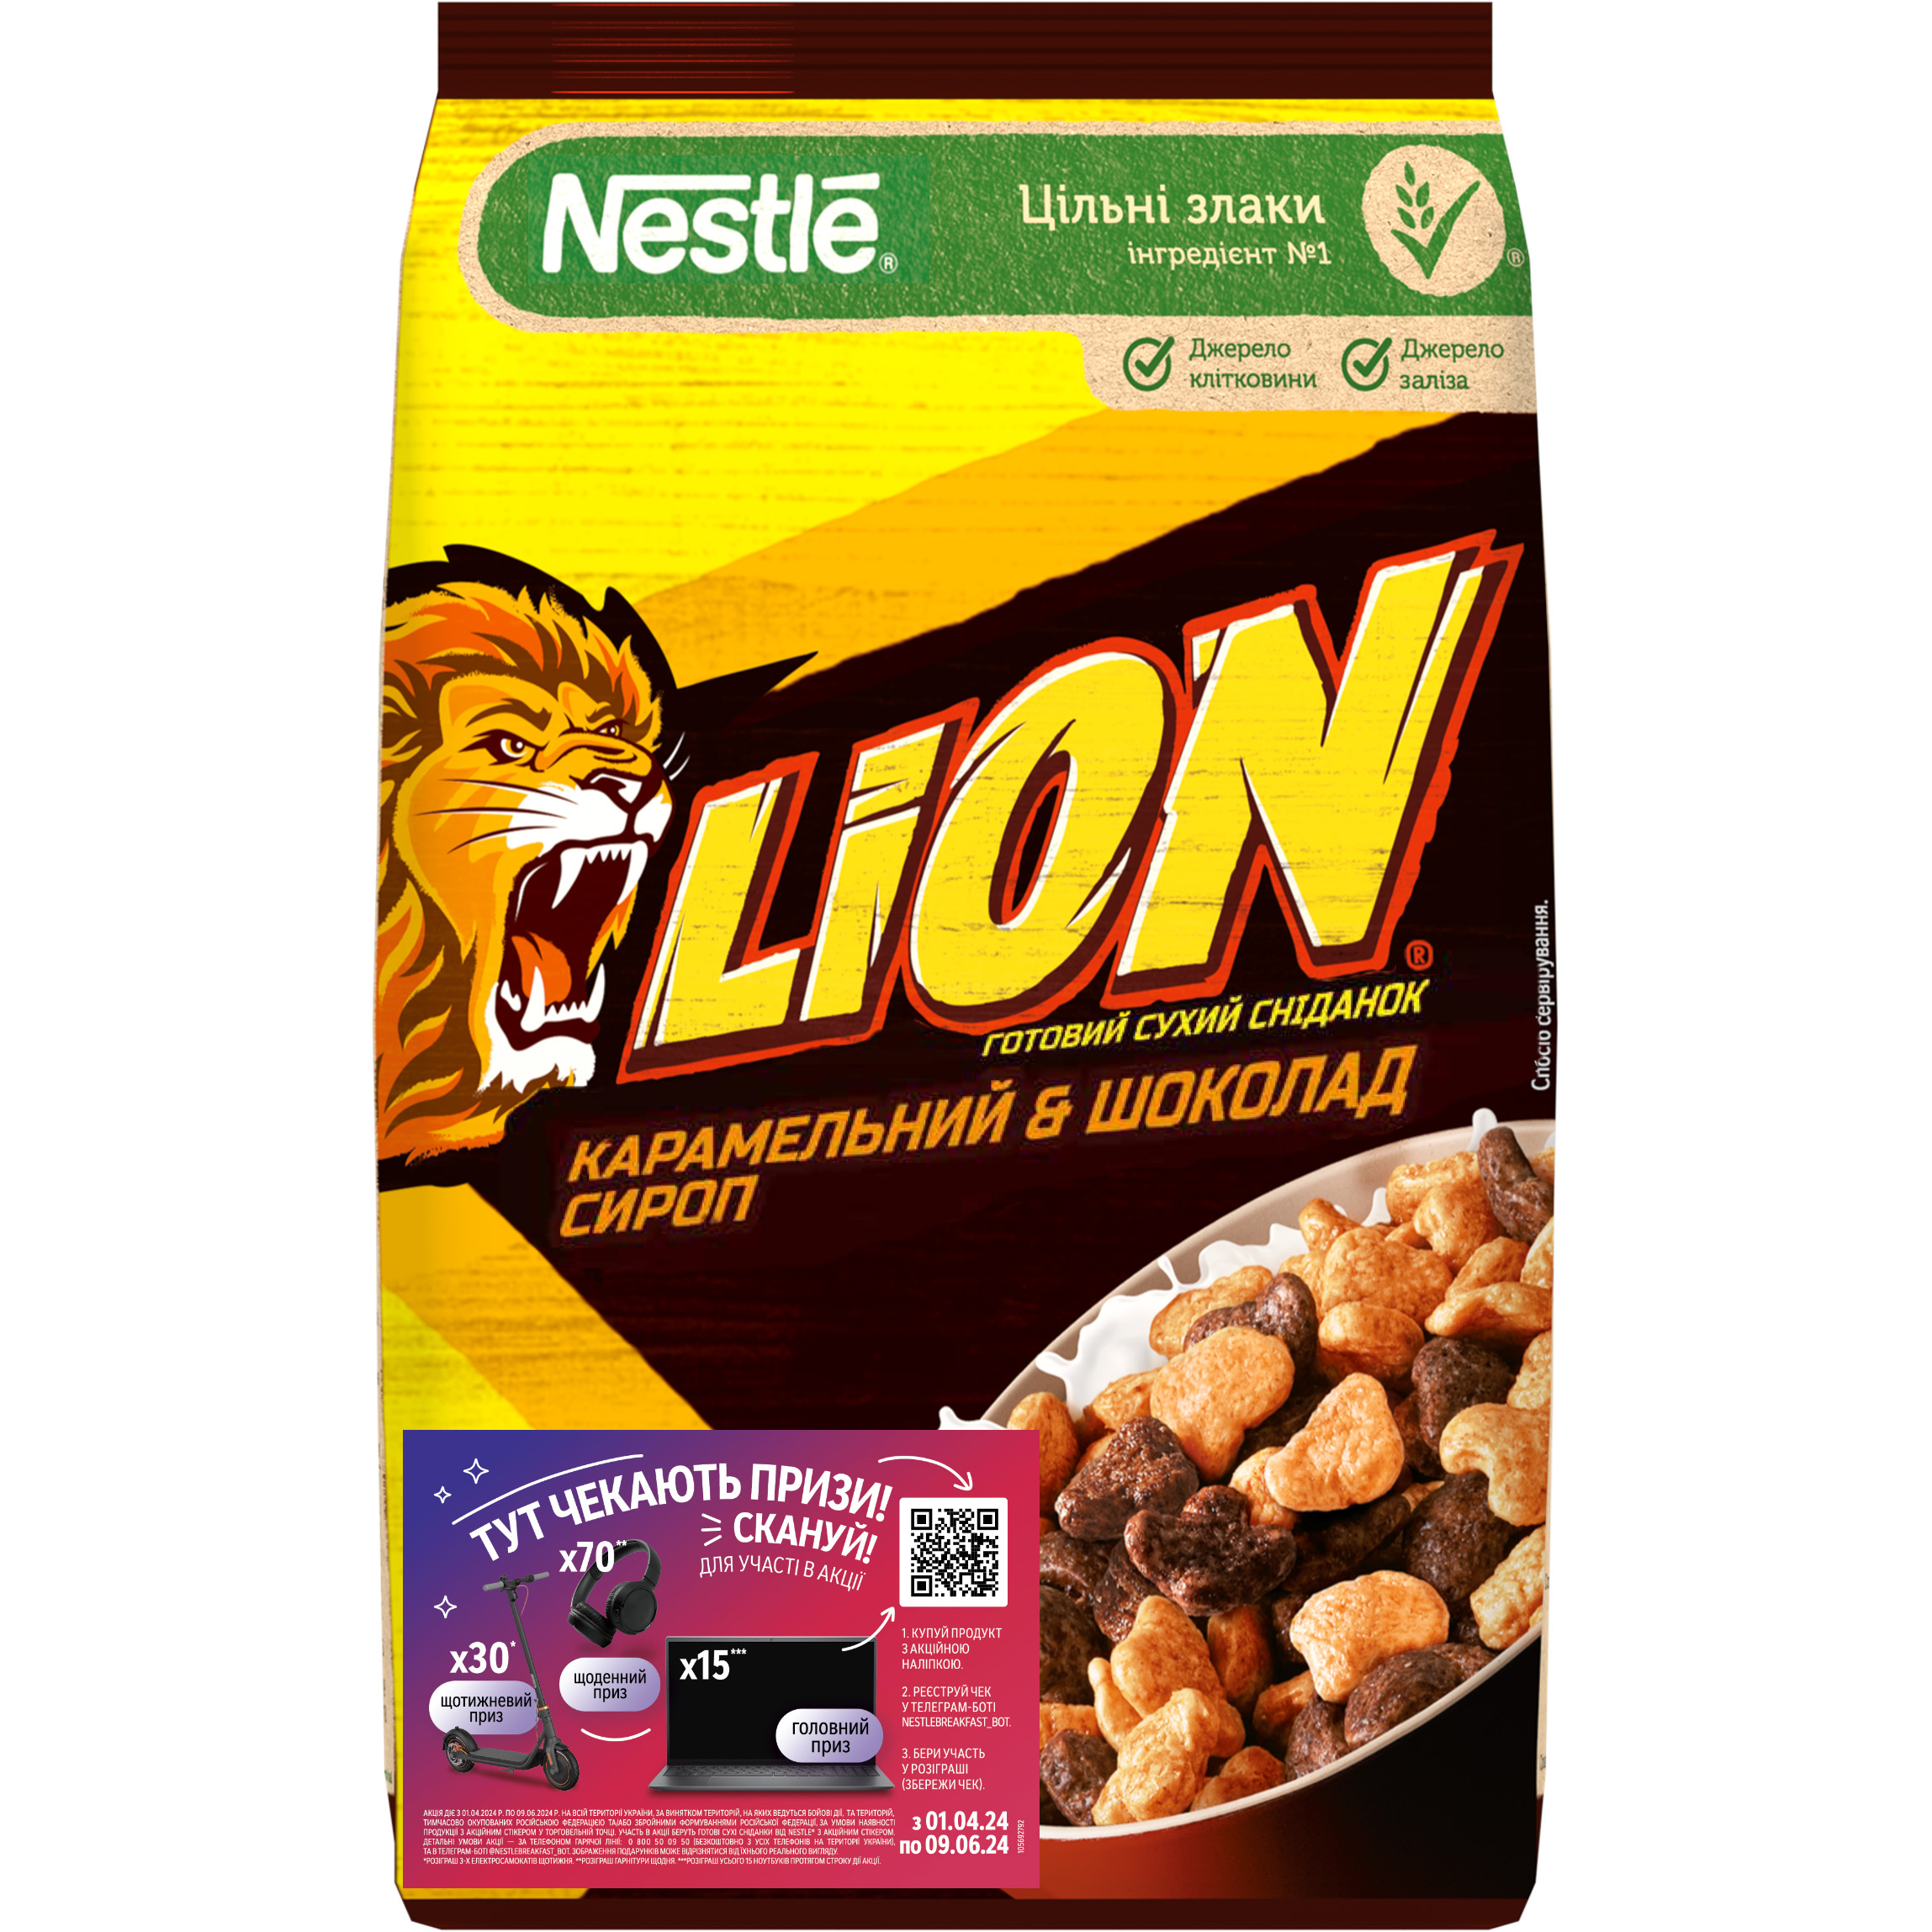 Готовий сухий сніданок Nestle Lion 375 г - фото 1